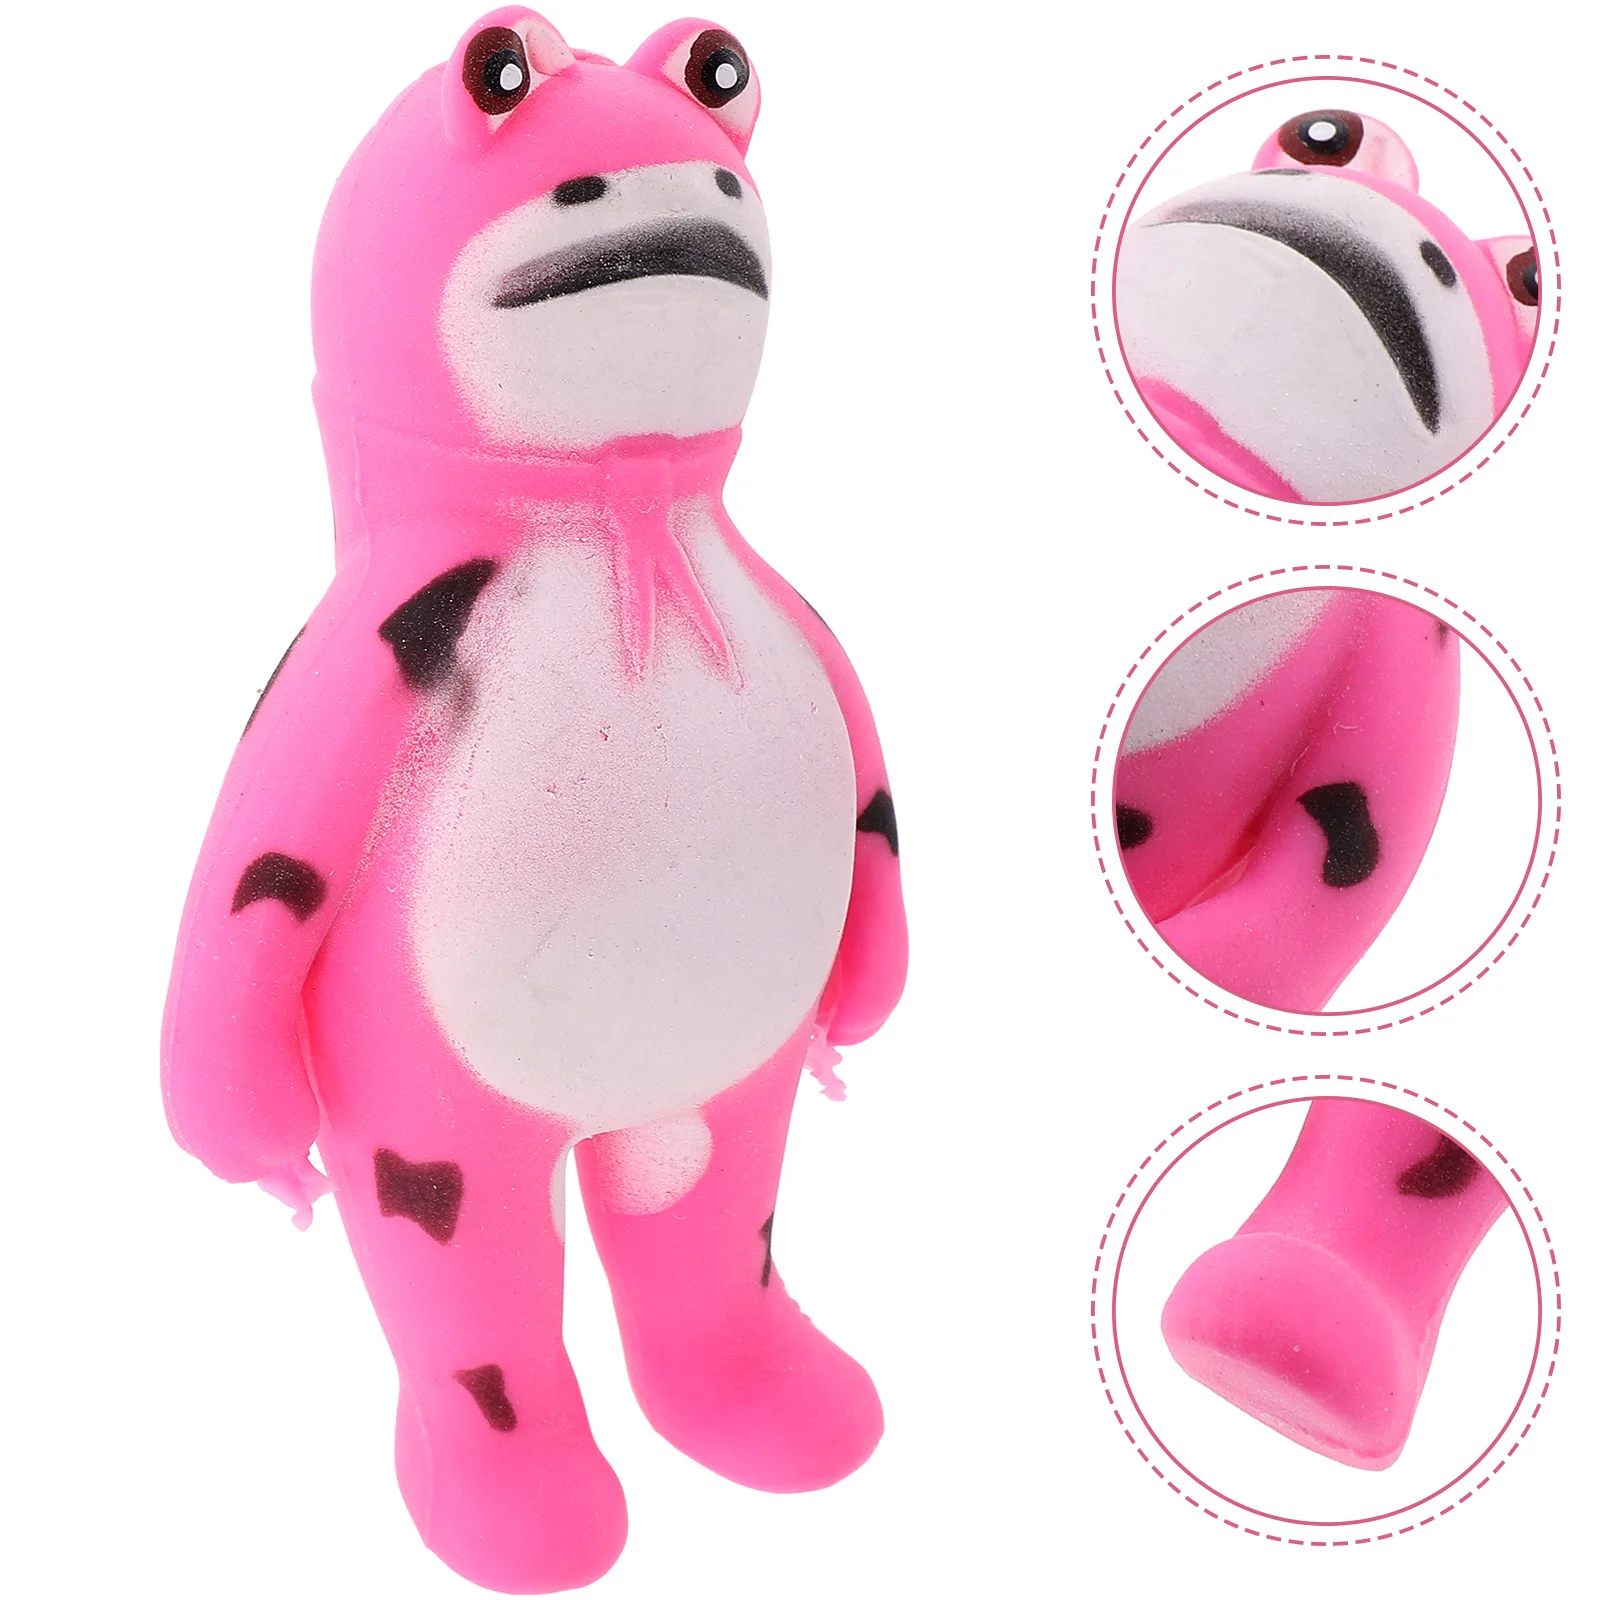 

2 Pcs Frog Decompression Toys Balls Adults Stretchy Aldult Home Squeeze Sensory Fidget